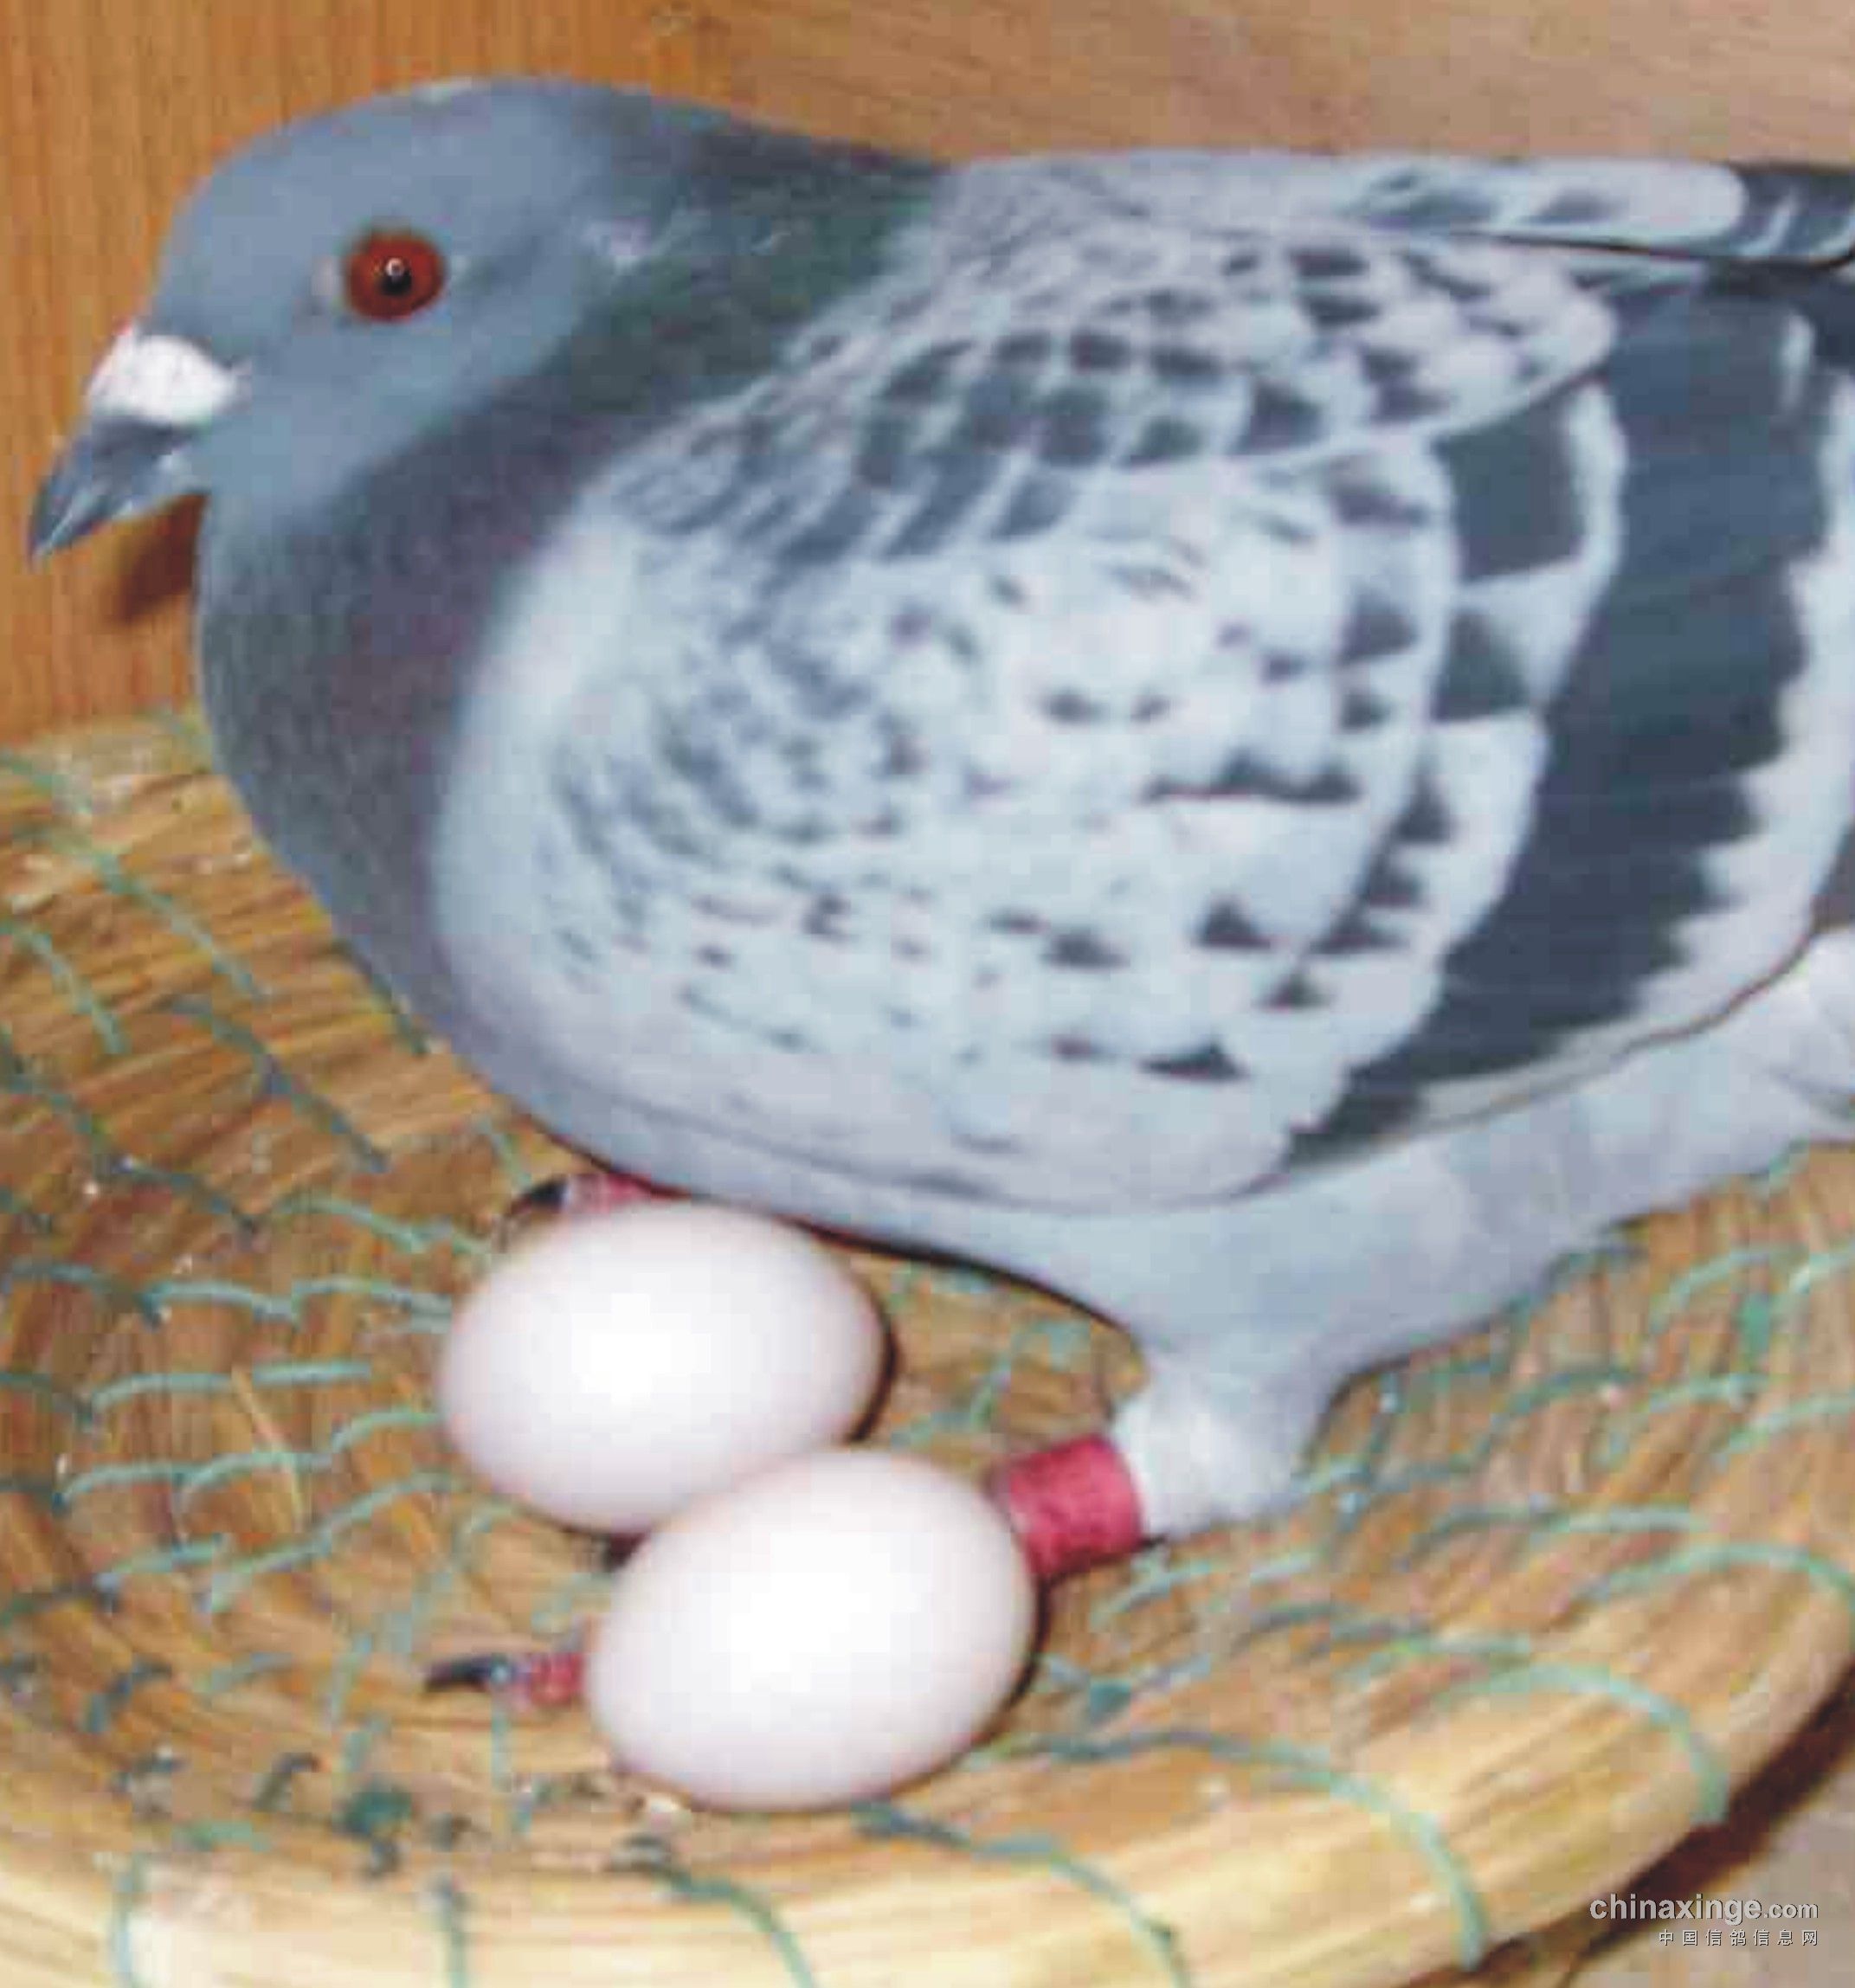 在鸽友家闲聊,顺便观赏了一下鸽子,看到鸽友的种鸽都在孵蛋